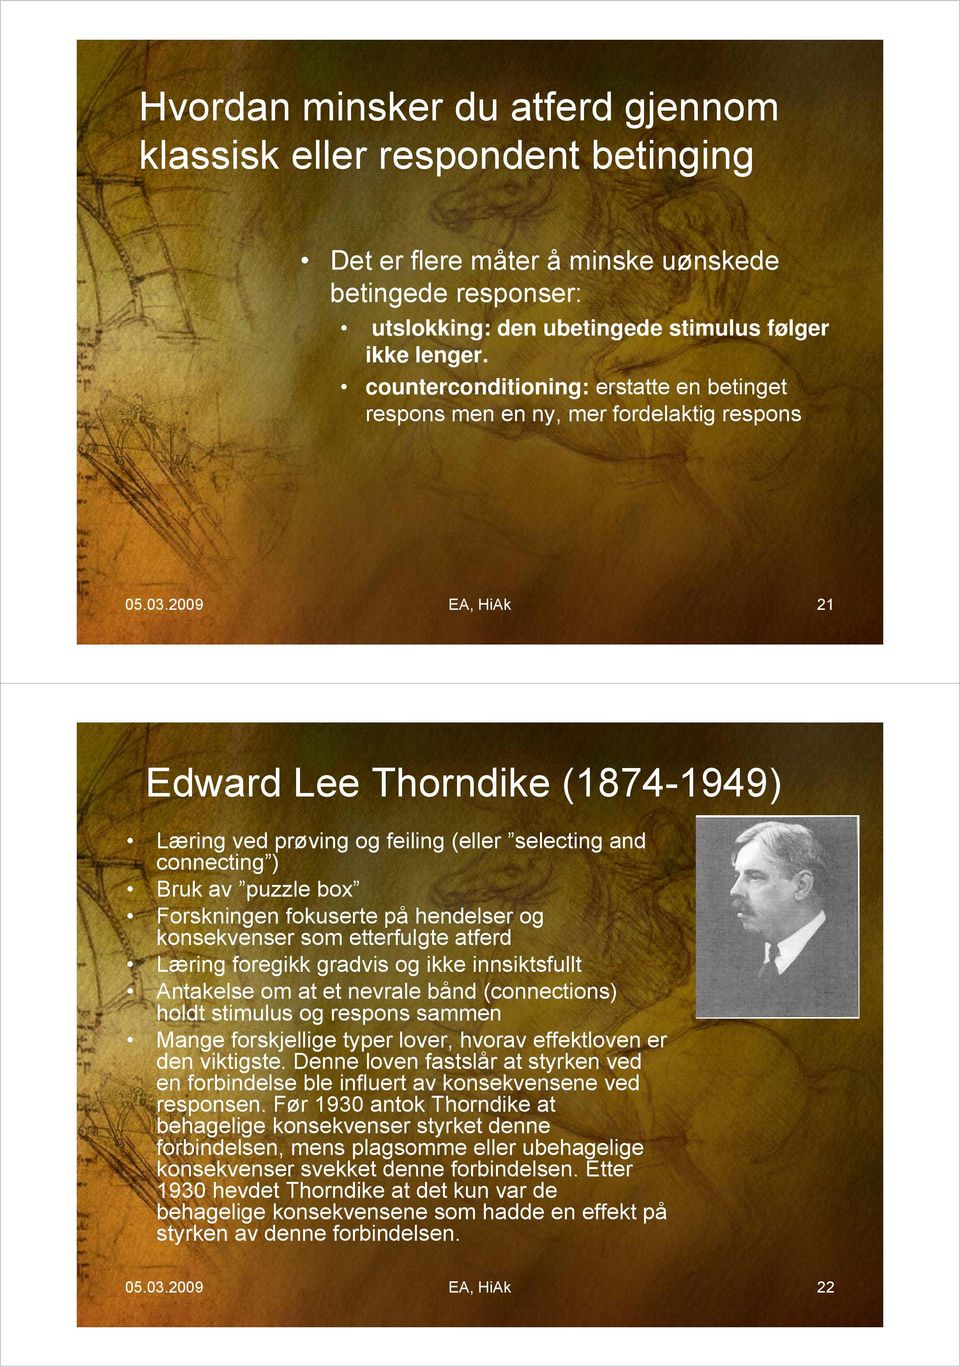 2009 EA, HiAk 21 Edward Lee Thorndike (1874-1949) Læring ved prøving og feiling (eller selecting and connecting ) g) Bruk av puzzle box Forskningen fokuserte på hendelser og konsekvenser som